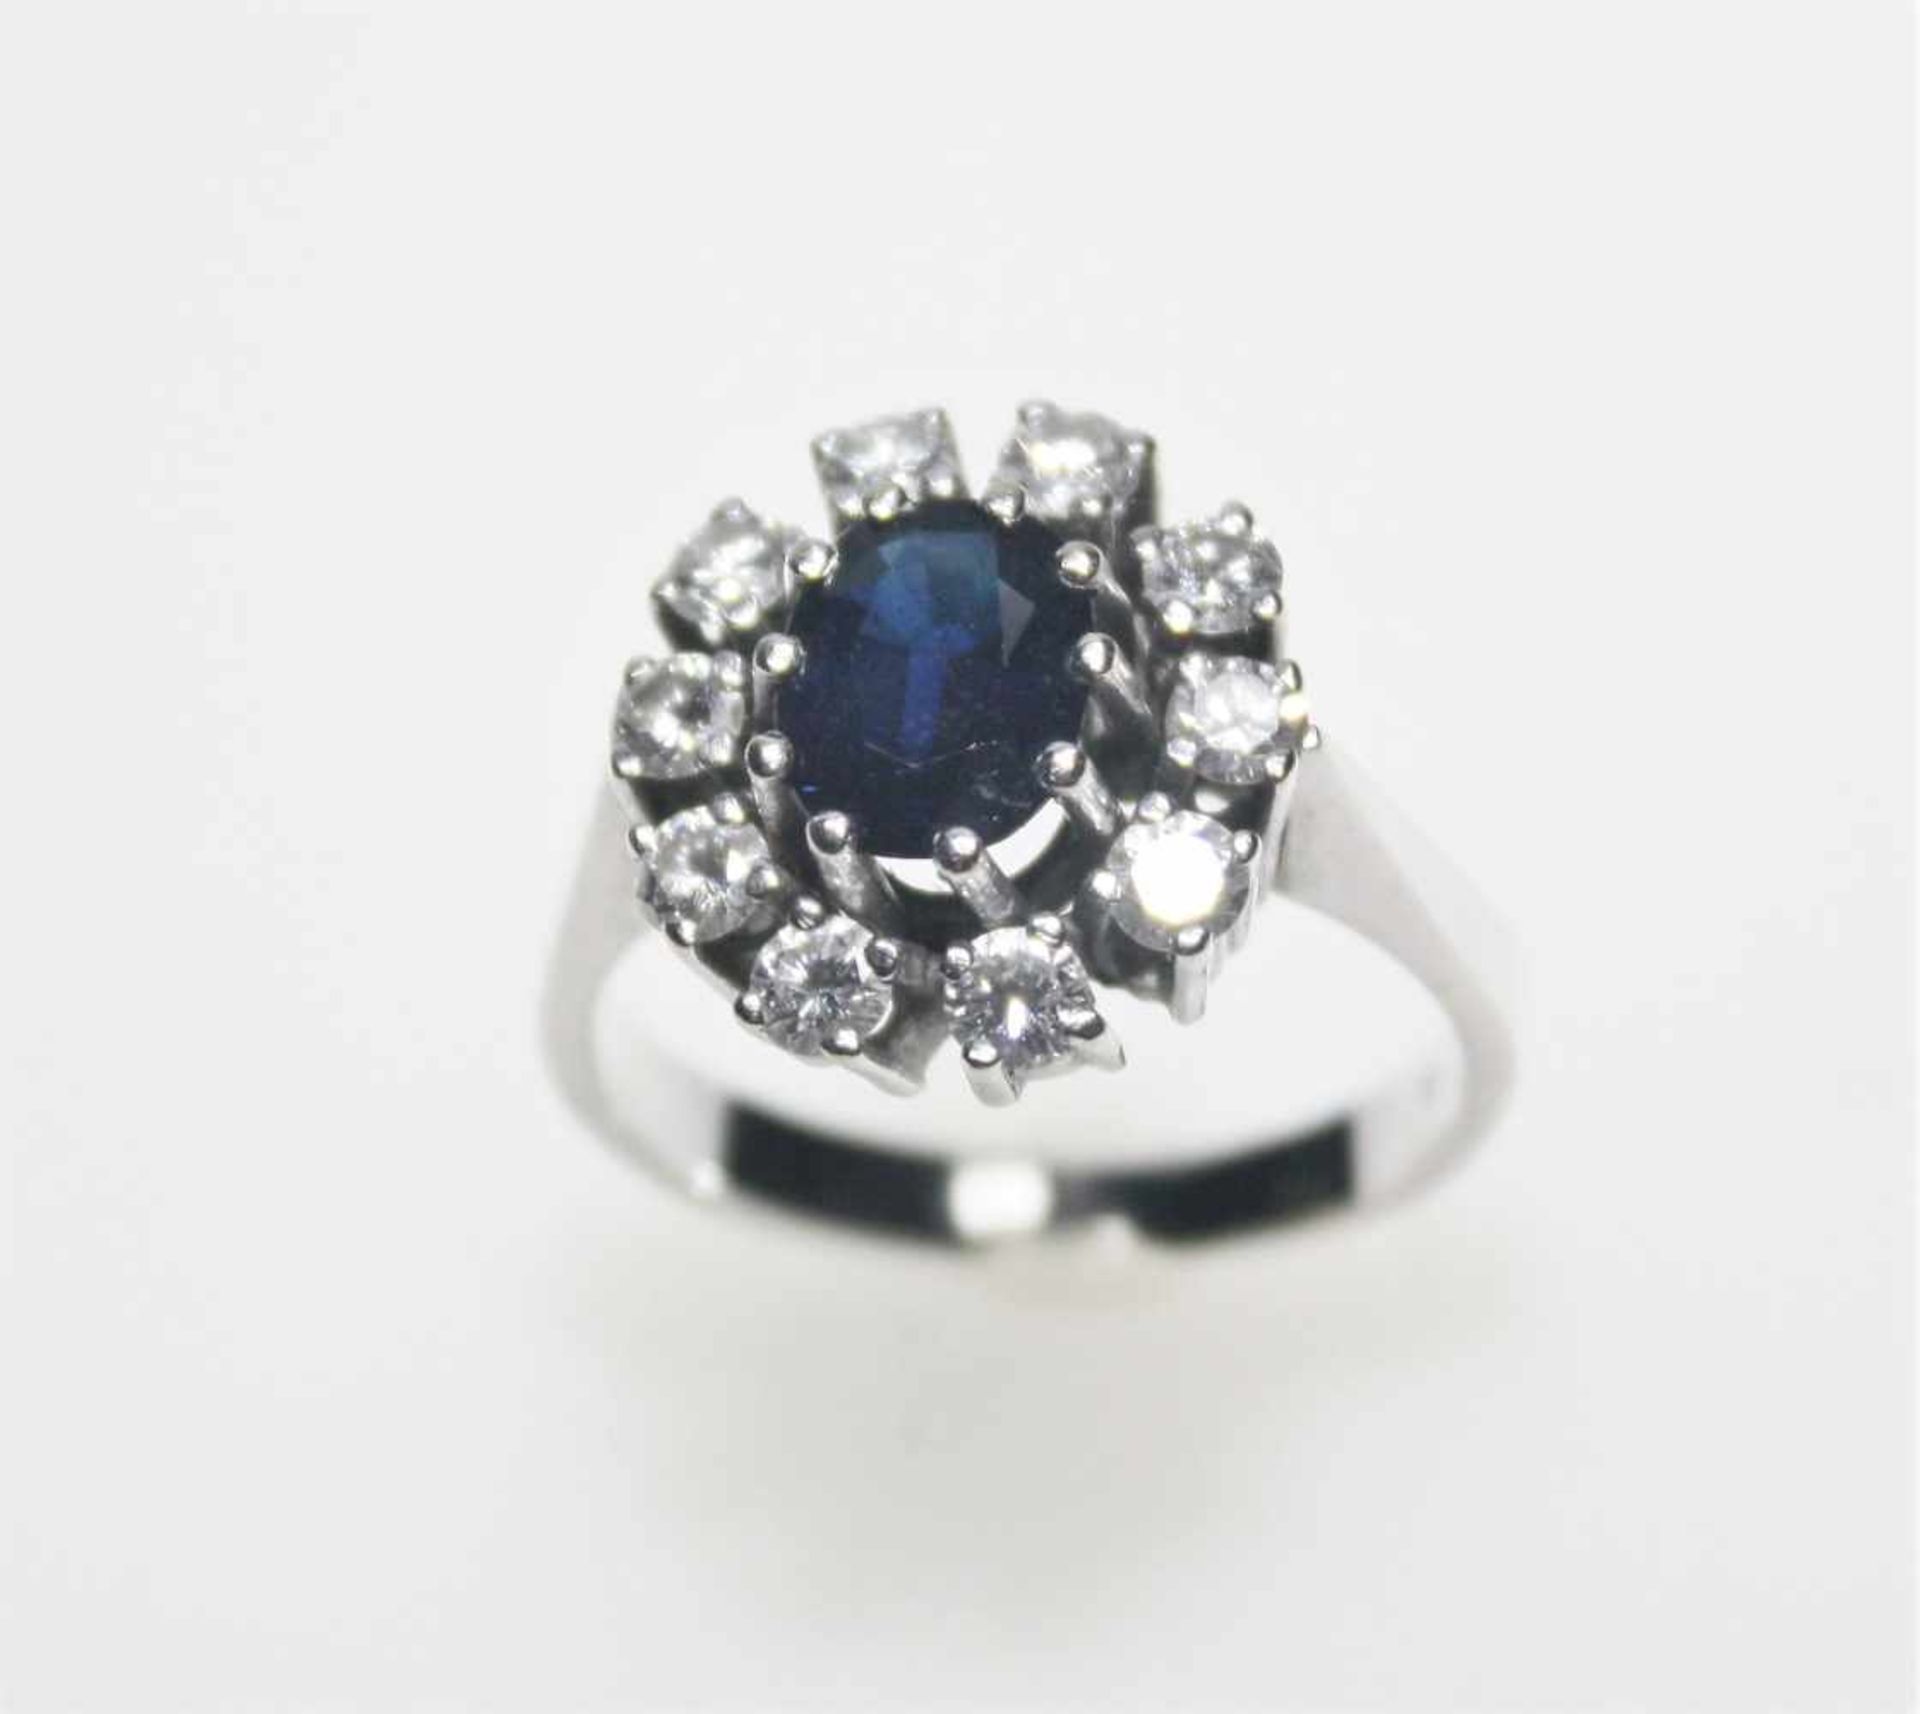 Weißgoldring 585/f gest. mit einem oval facettierten, dunkelblauen Saphir umgeben von Diamanten in